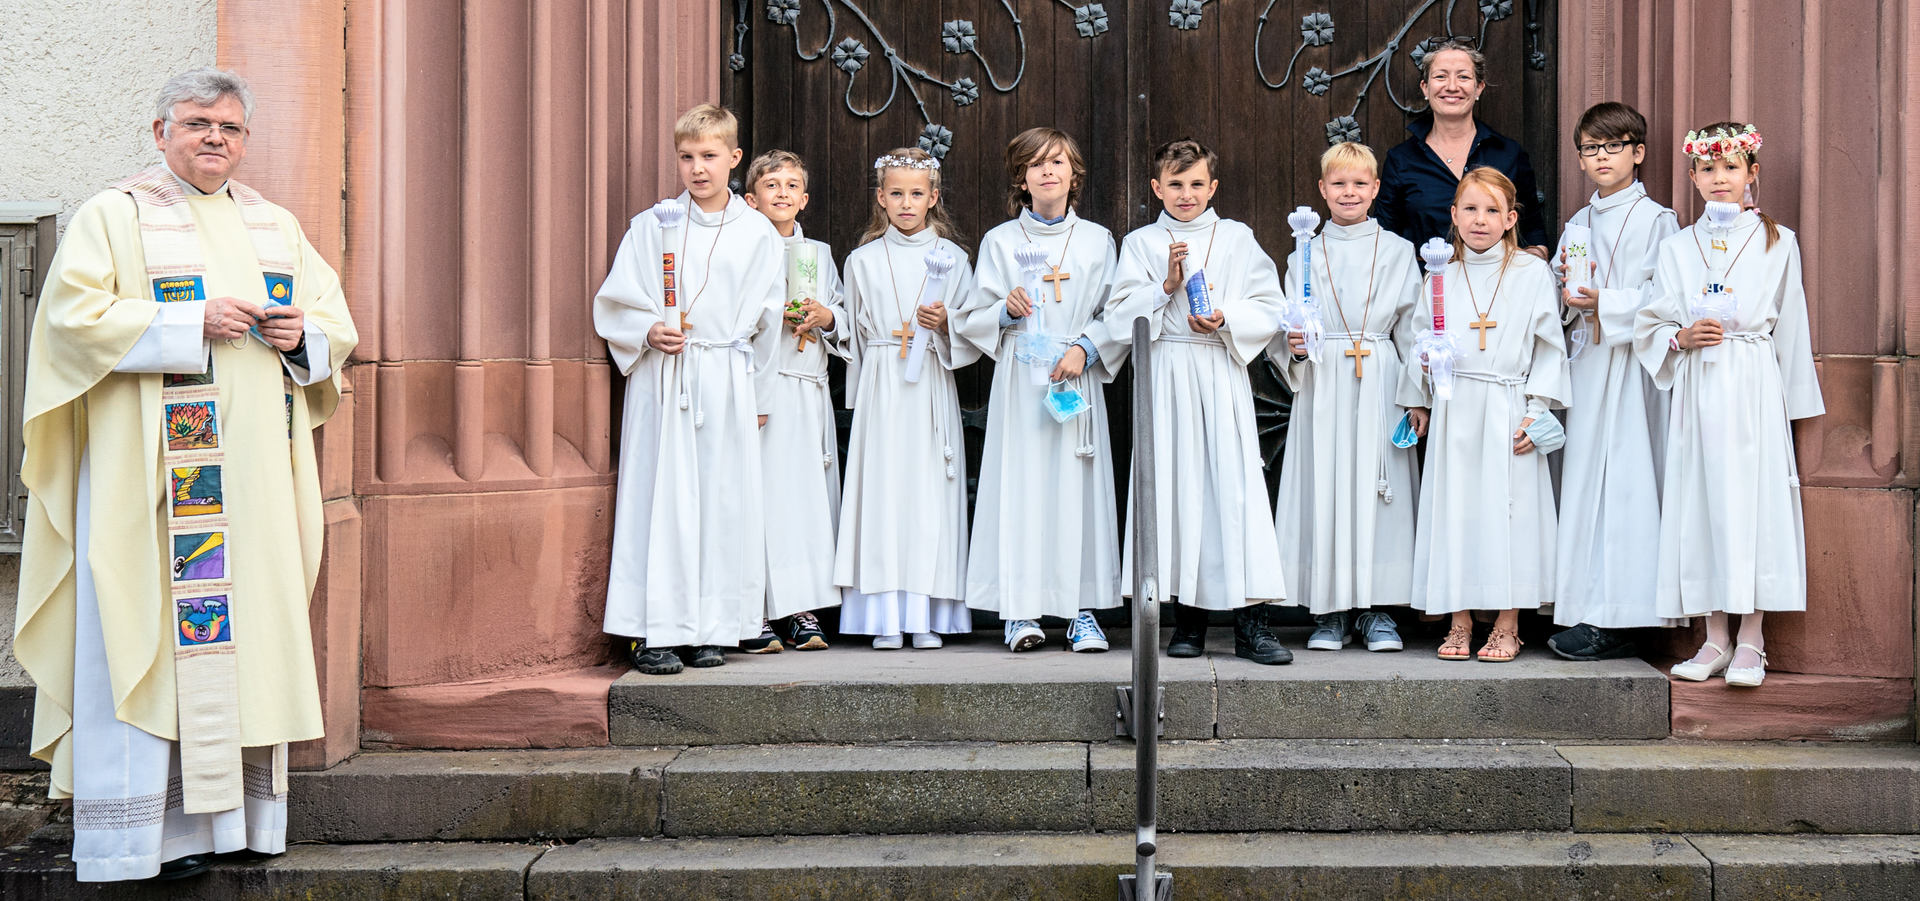 Zweite Gruppe nach Empfang der Hl. Kommunion Im festlichen Gewand vor dem Kirchenportal (c) Foto Stöber 2020 / Hannah Weinmann